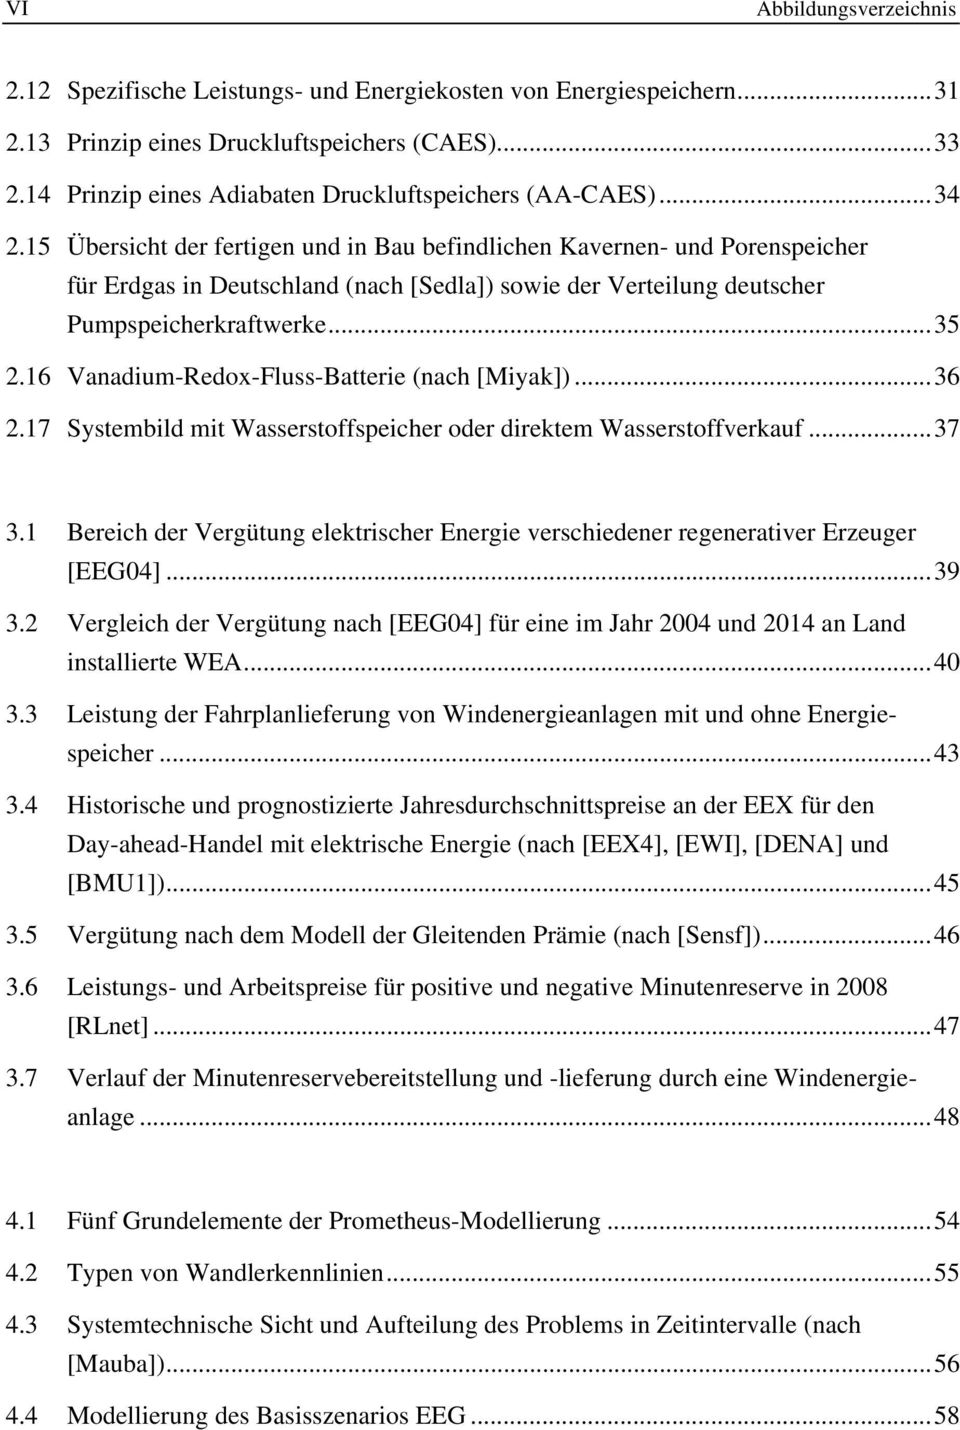 15 Übersicht der fertigen und in Bau befindlichen Kavernen- und Porenspeicher für Erdgas in Deutschland (nach [Sedla]) sowie der Verteilung deutscher Pumpspeicherkraftwerke...35 2.